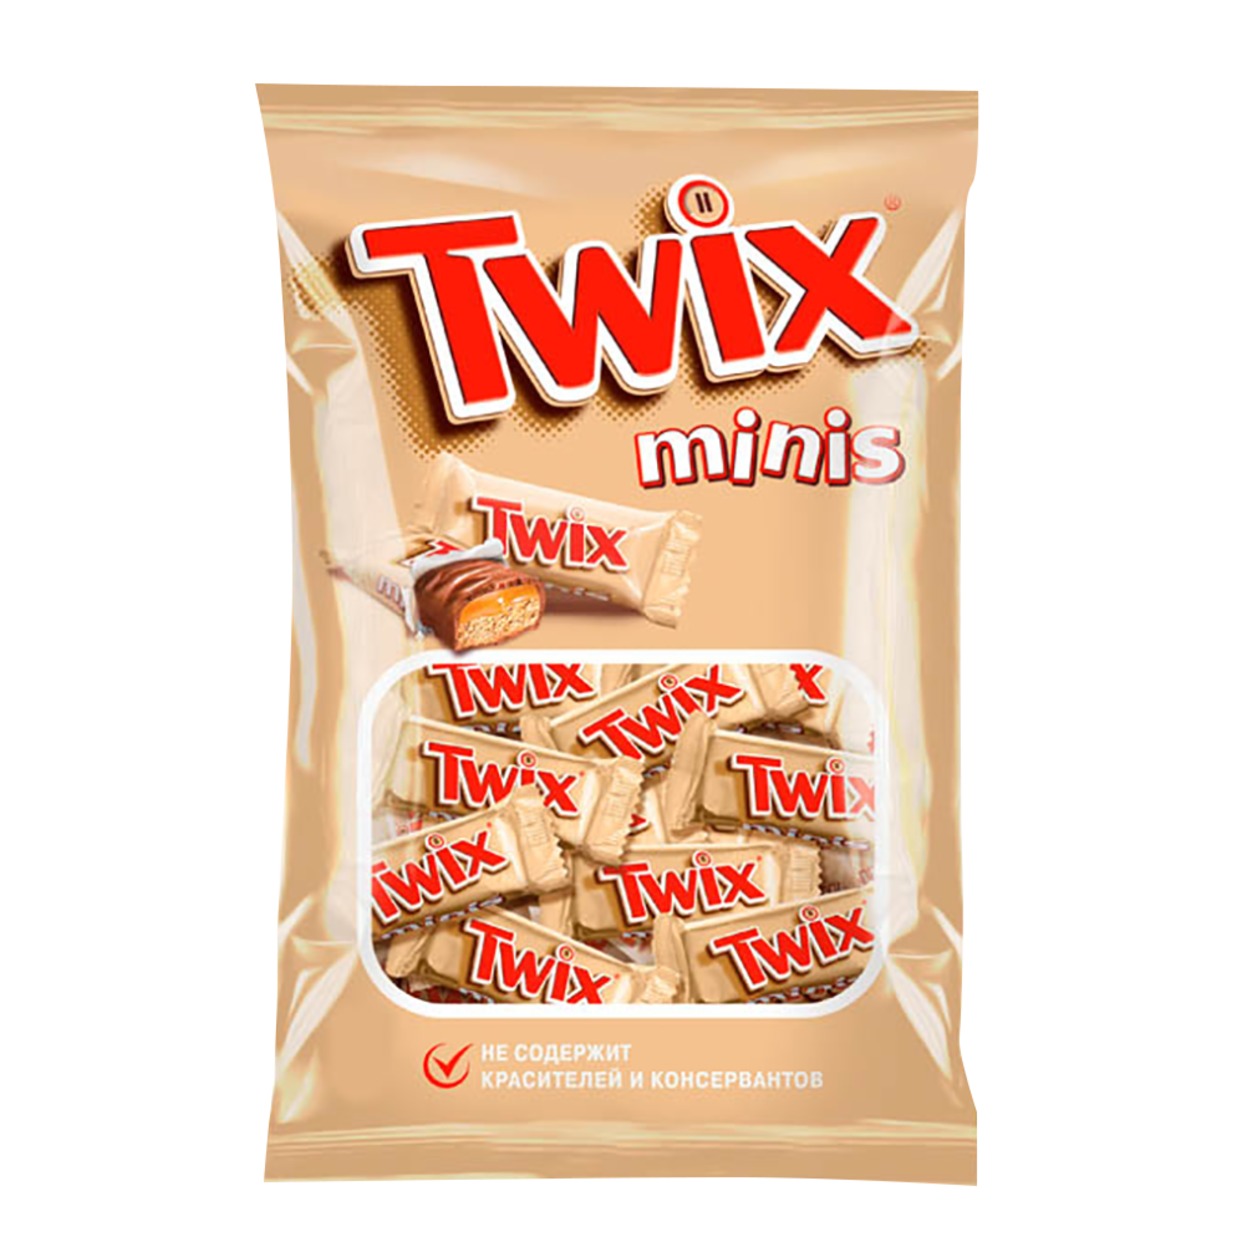 Шоколадные батончики Twix Minis, 184 г по акции в Пятерочке